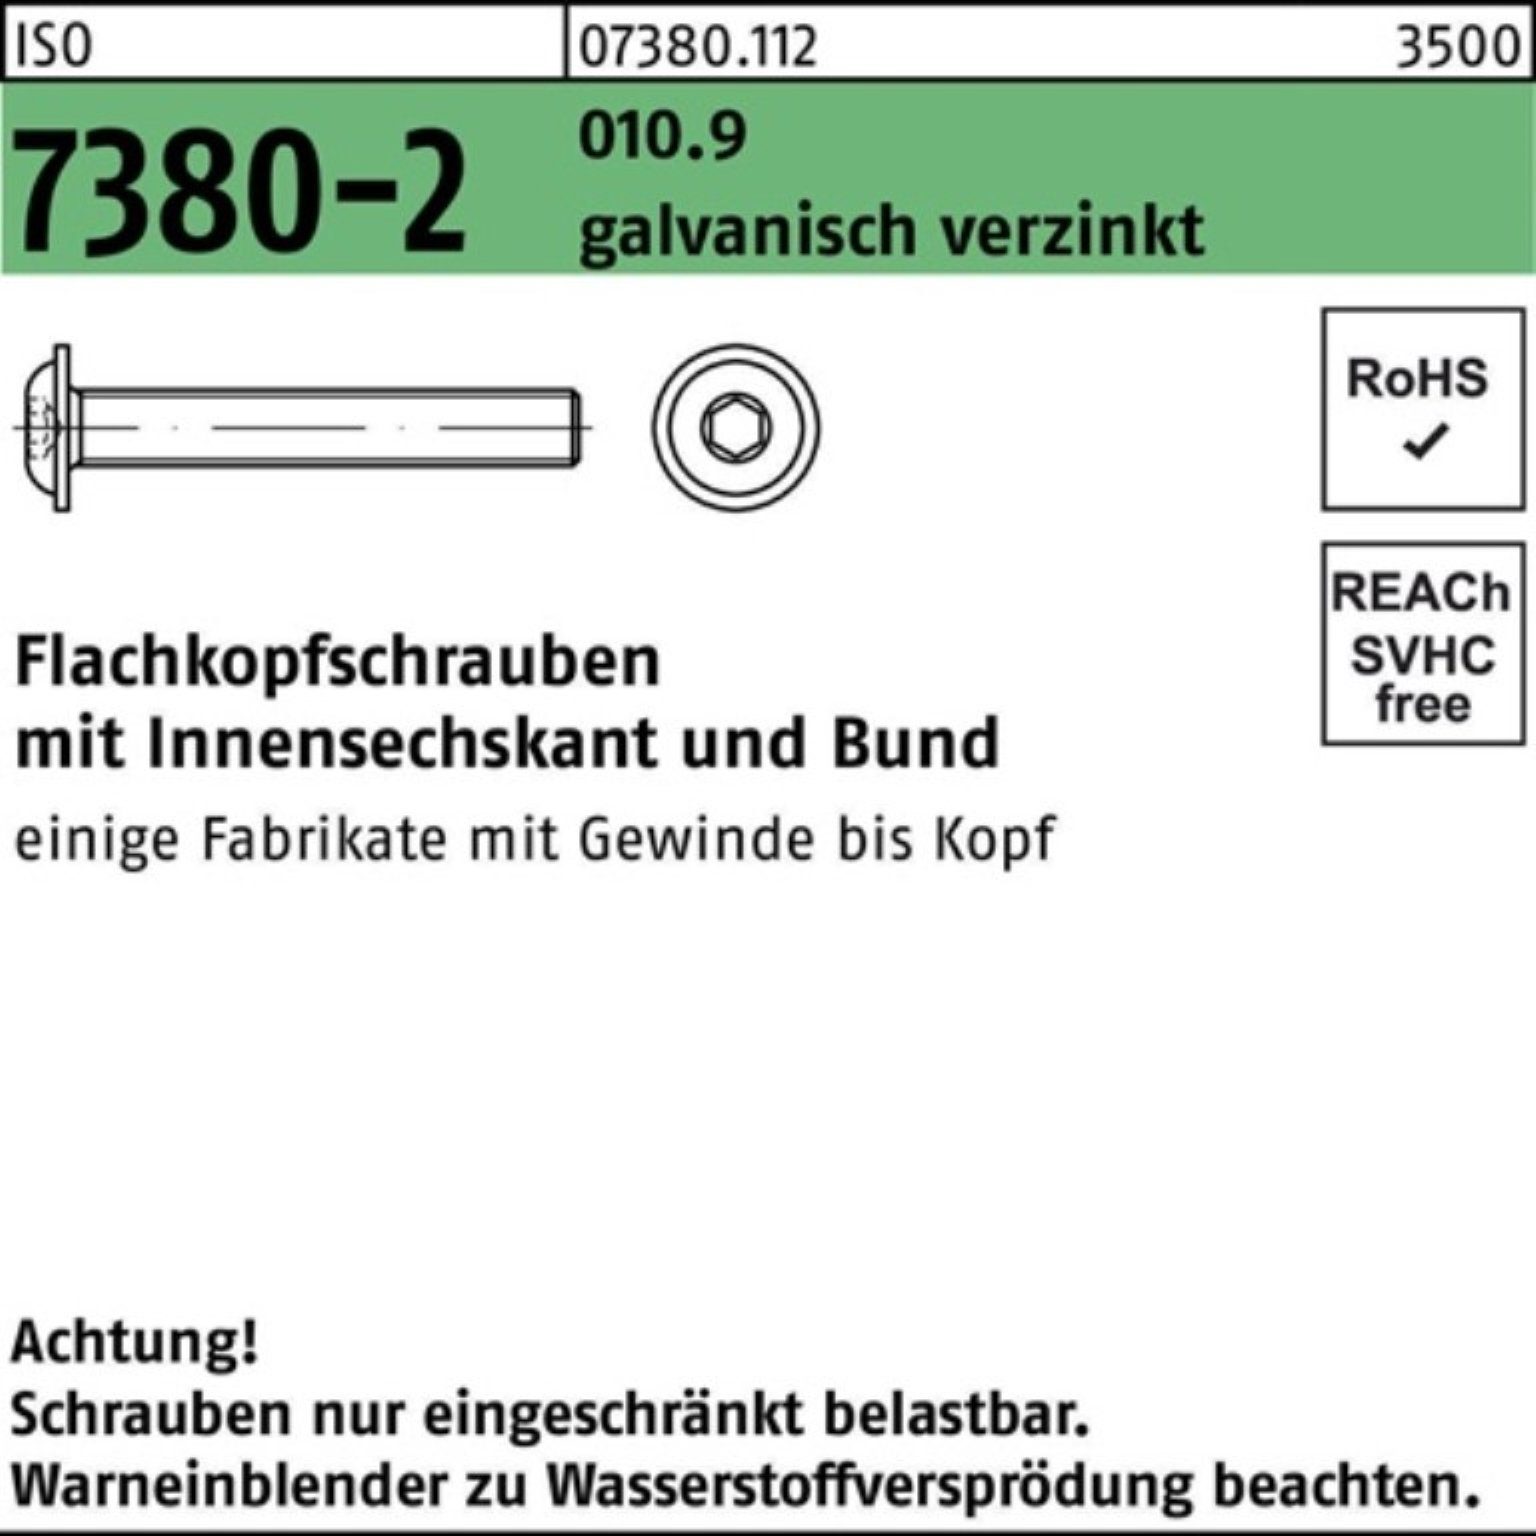 Reyher Schraube 500er Pack Flachkopfschraube gal 010.9 Bund/Innen-6kt 7380-2 M4x12 ISO